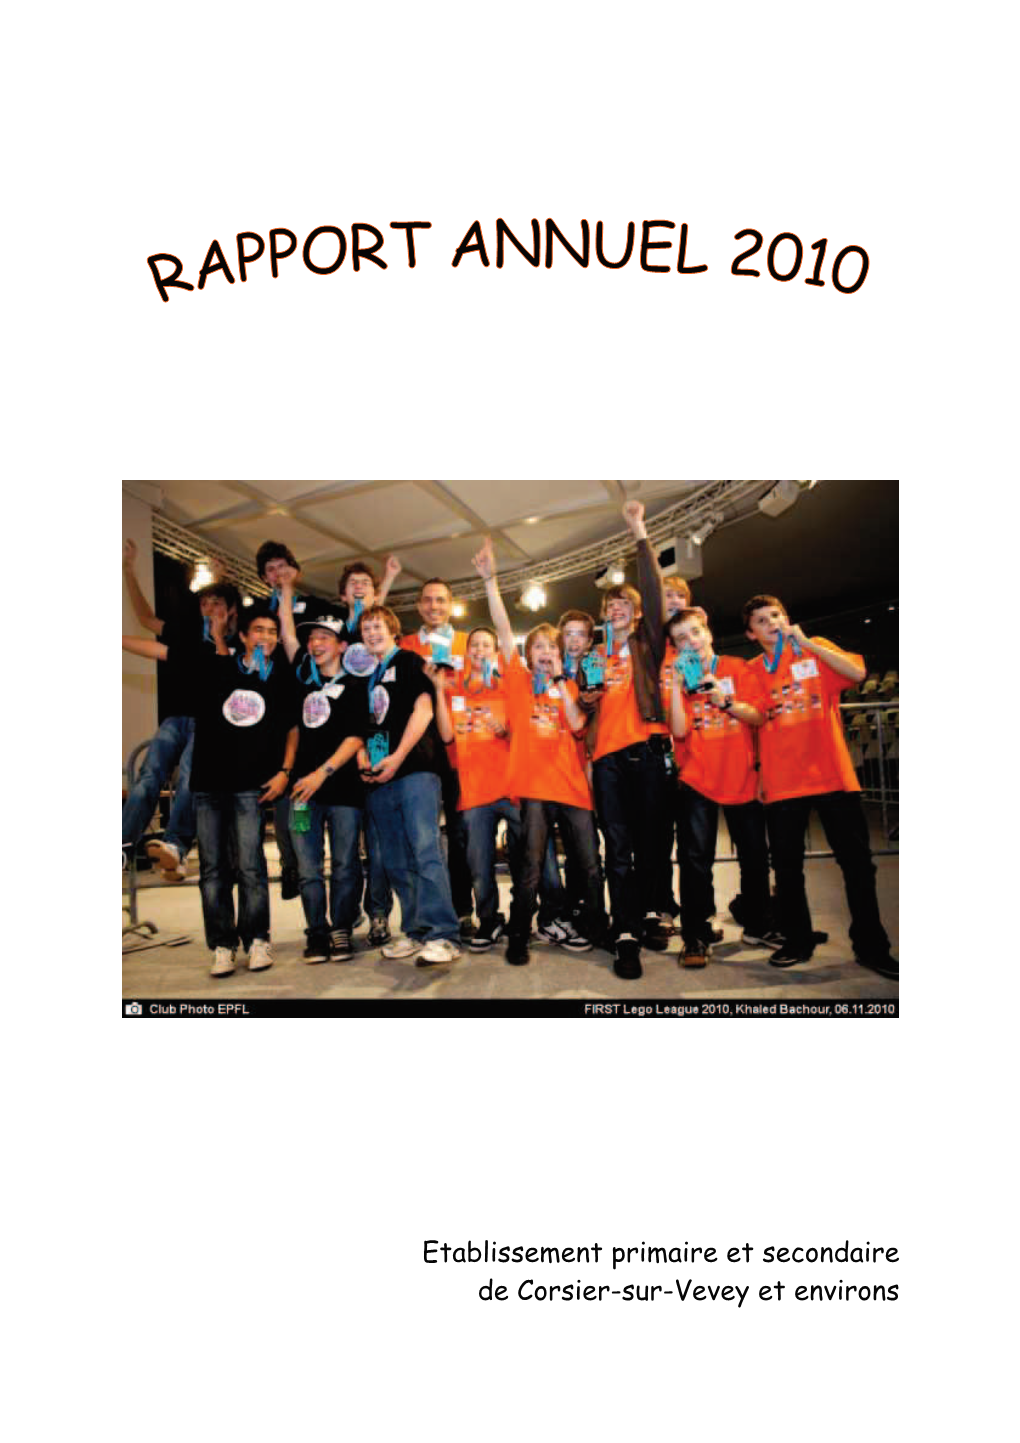 Etablissement Primaire Et Secondaire De Corsier-Sur-Vevey Et Environs Rapport Annuel 2010 Rapport Annuel 2010